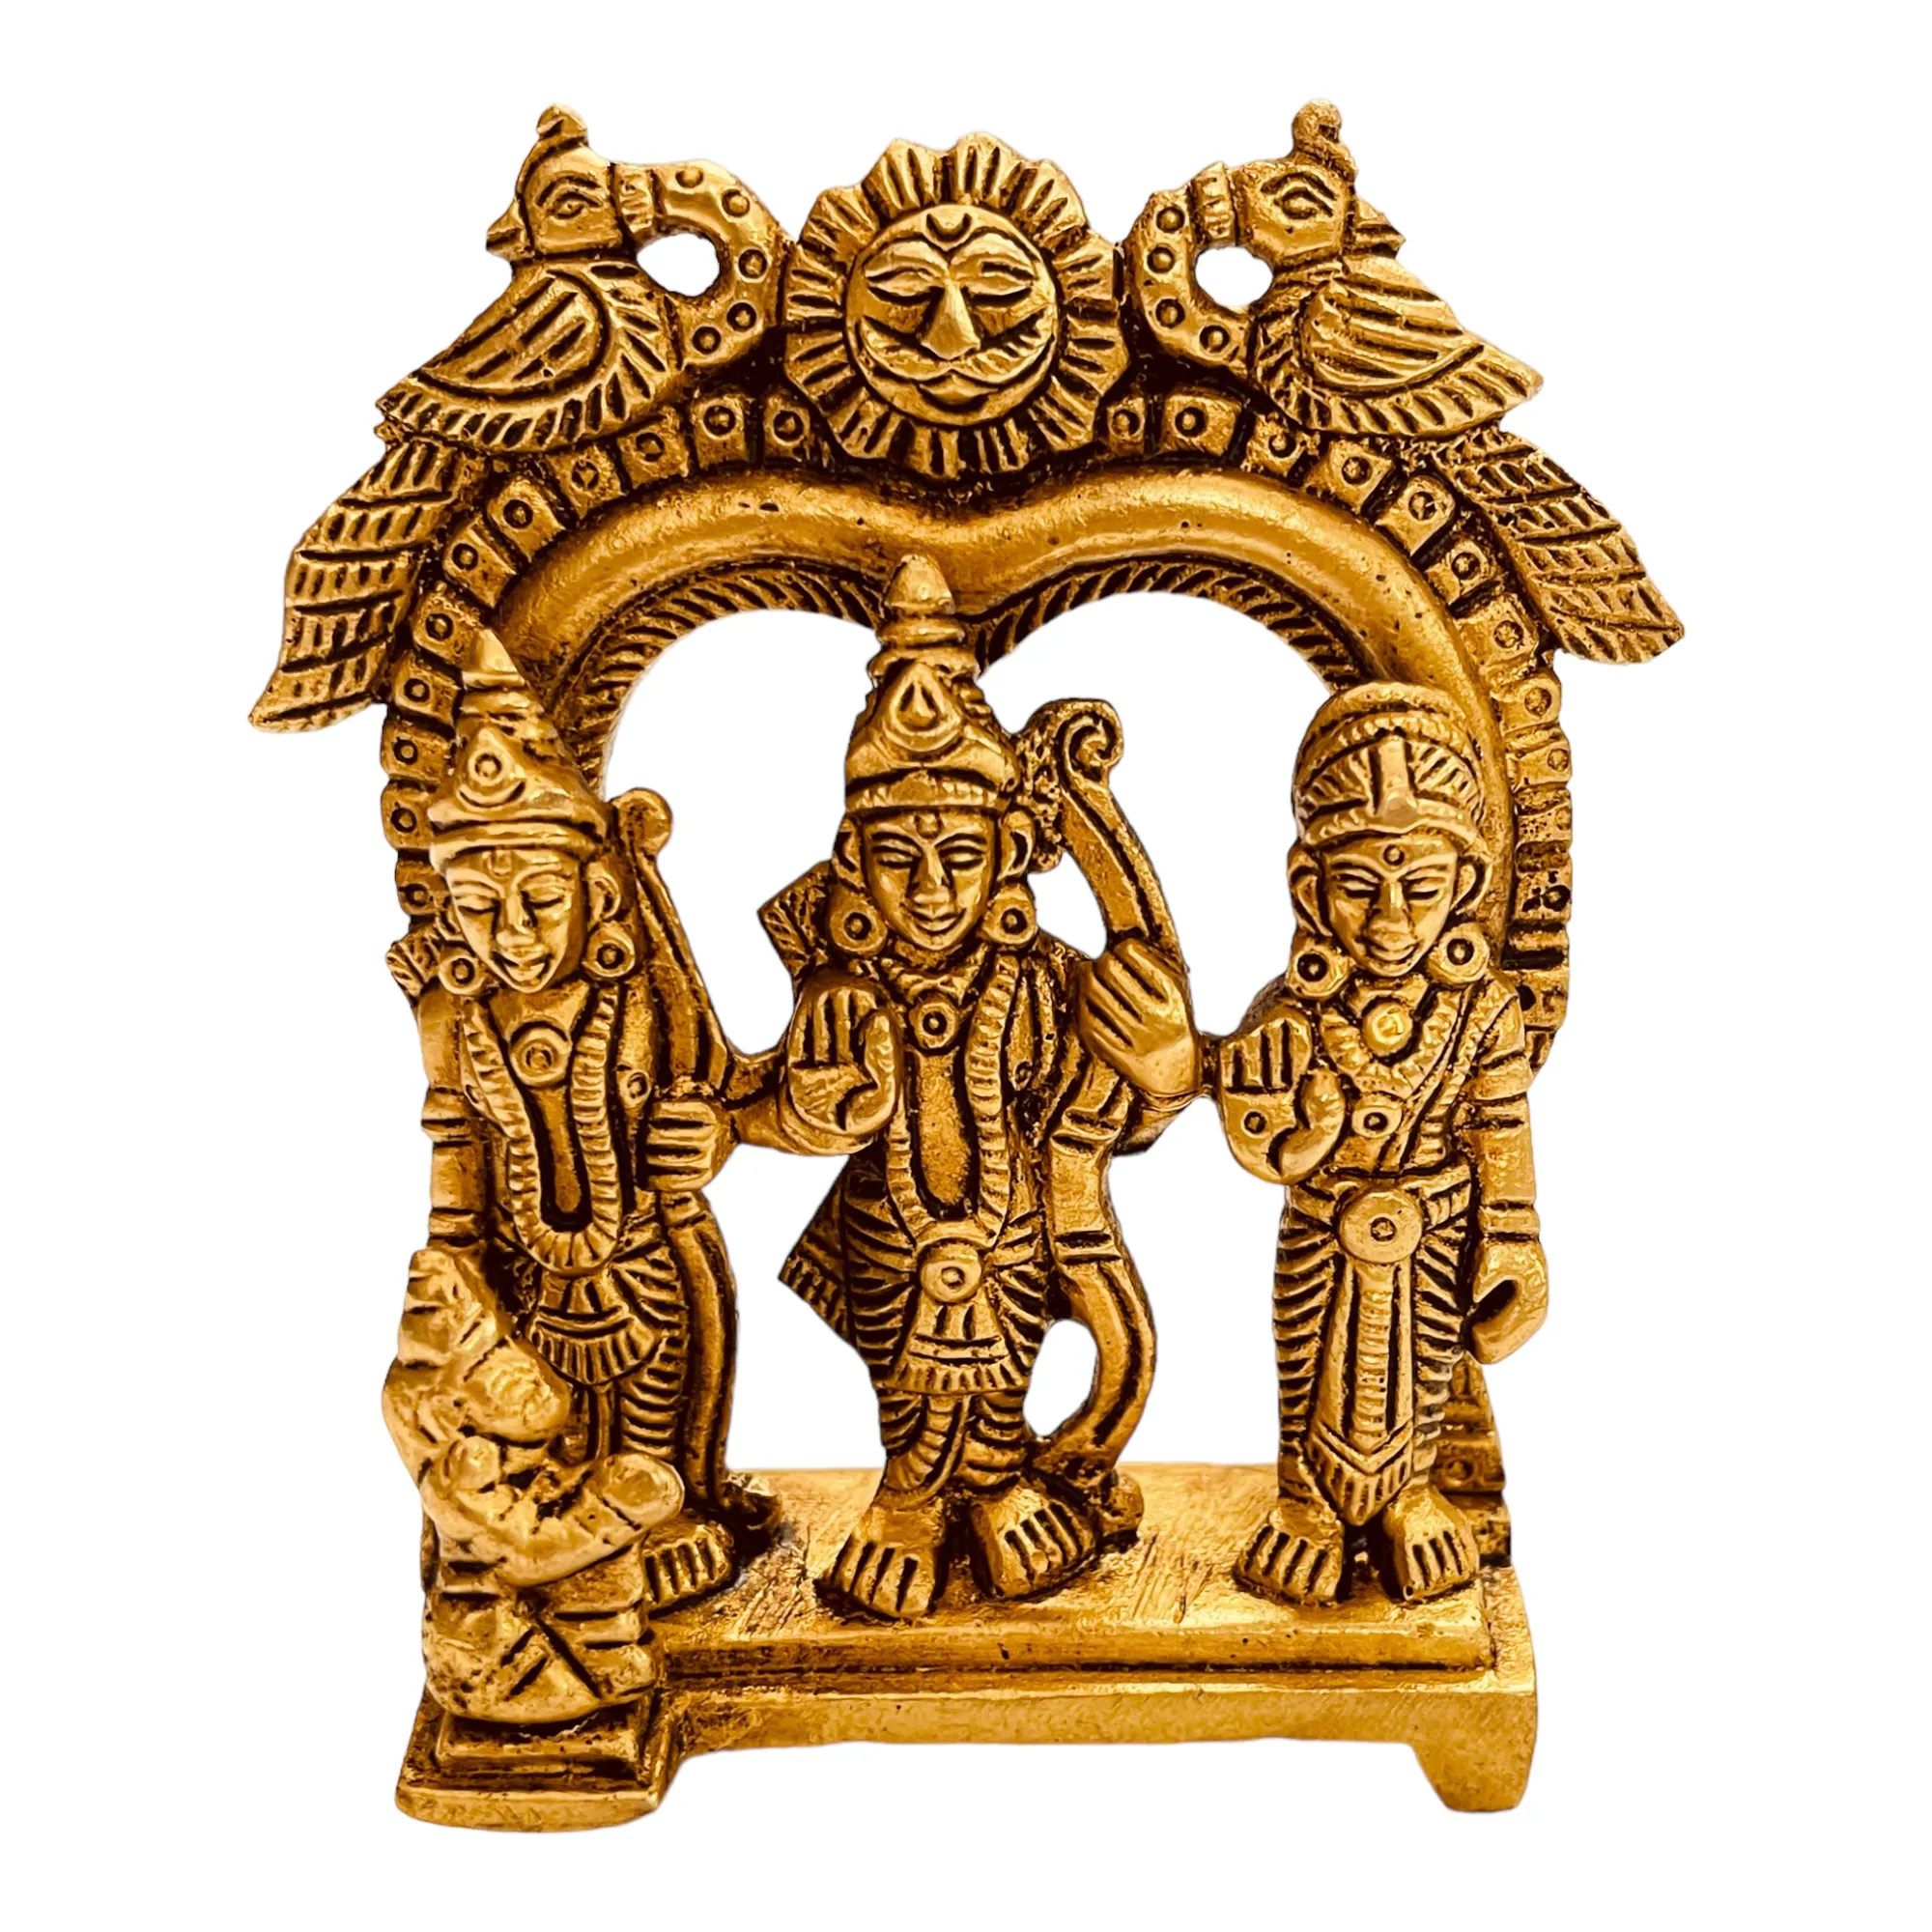 Sahaya हस्तनिर्मित पीतल रैम परिवार हिन्दू देवी-देवताओं प्रभु राम लक्ष्मण और सीता प्रतिमा 9cm x 7.5cm x 3cm Sto मंदिर द्वारा पुनर्विक्रय के लिए आदर्श